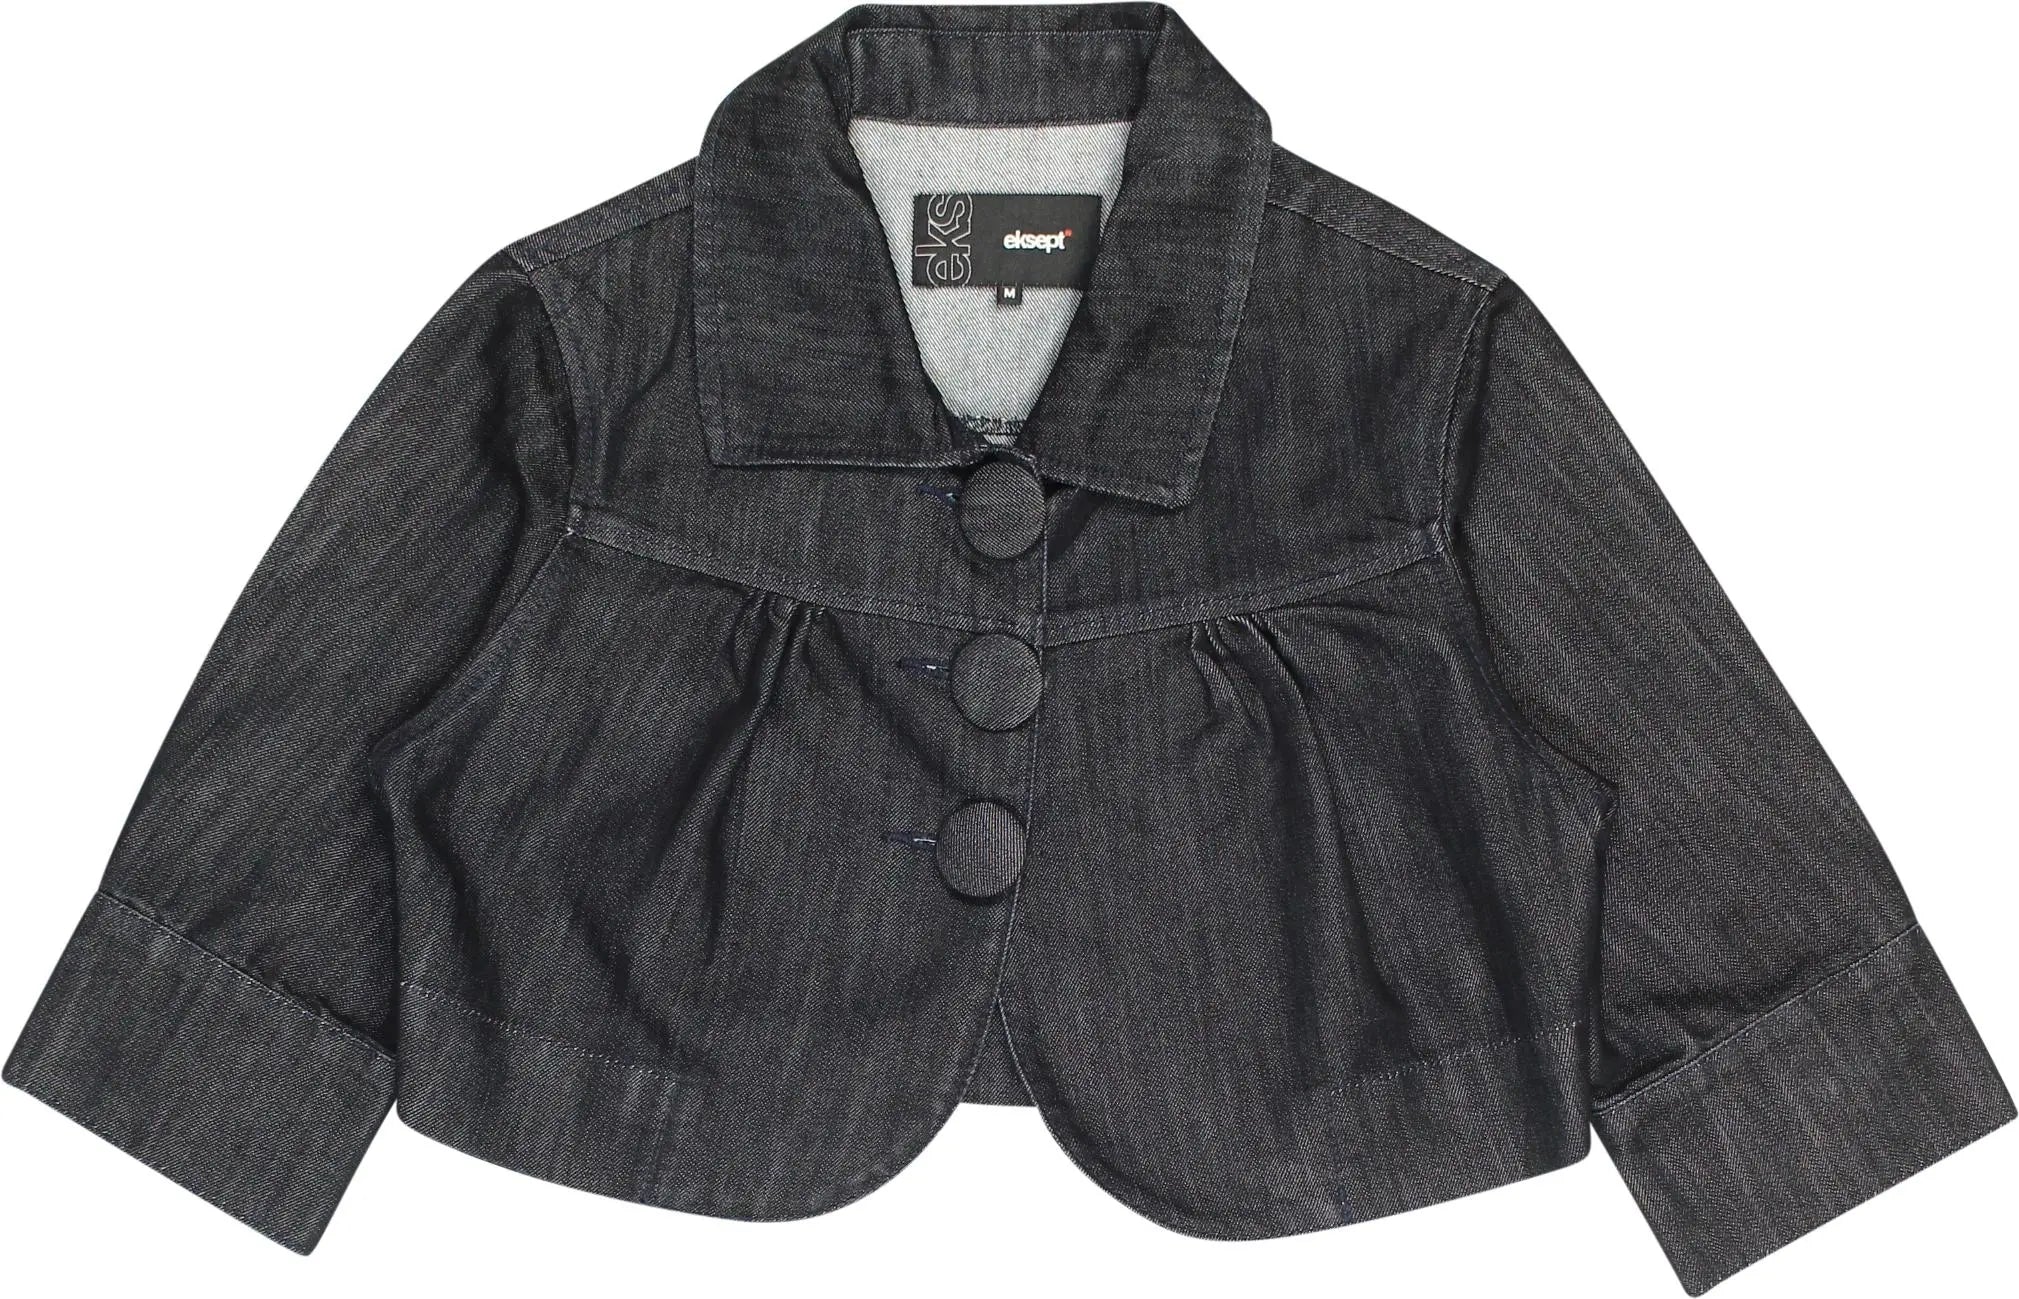 Eksept - Cropped Denim Jacket- ThriftTale.com - Vintage and second handclothing